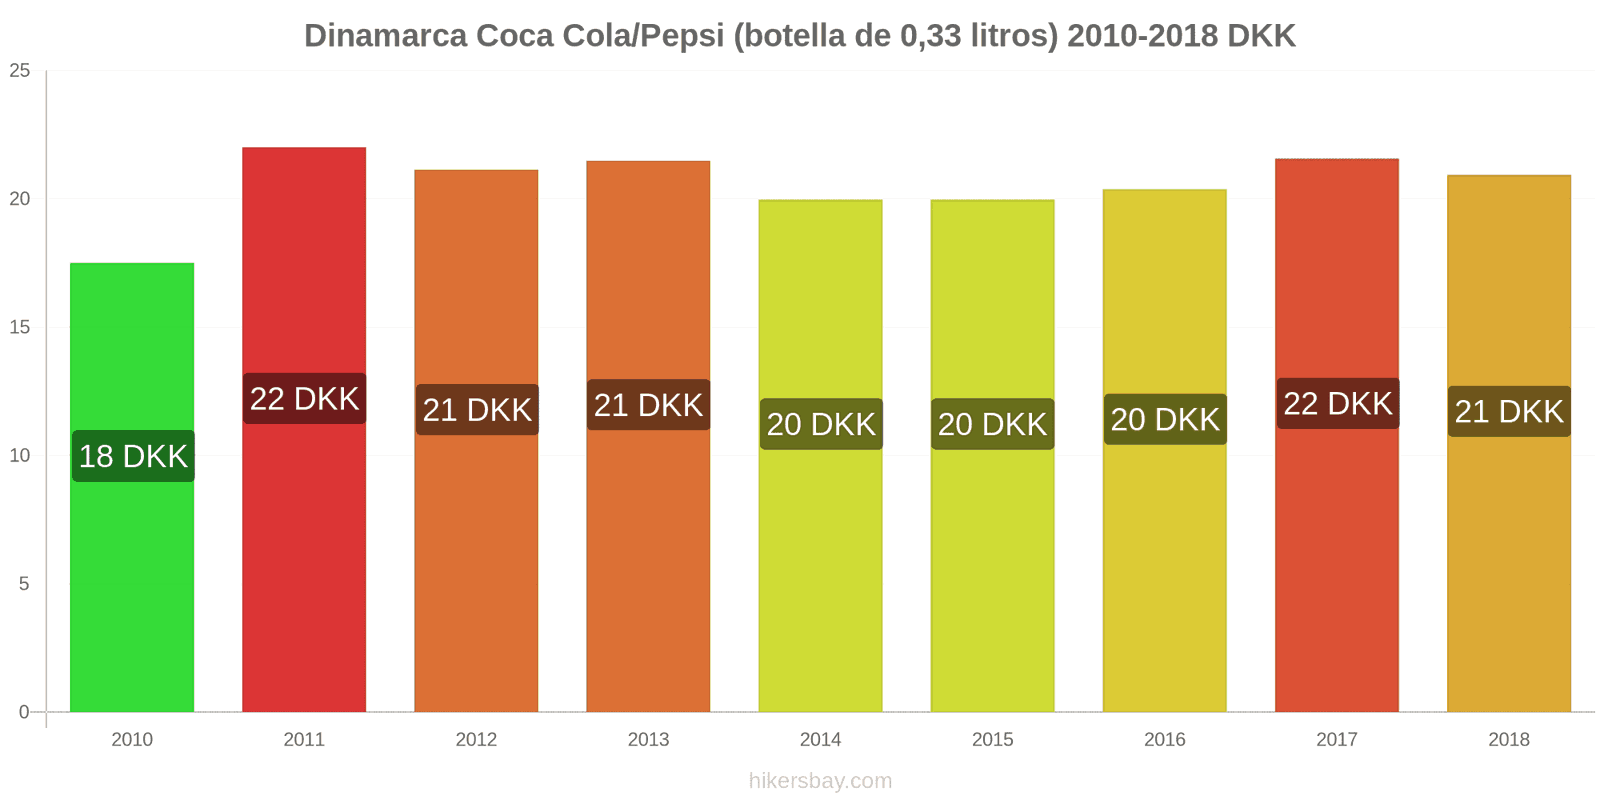 Dinamarca cambios de precios Coca-Cola/Pepsi (botella de 0.33 litros) hikersbay.com